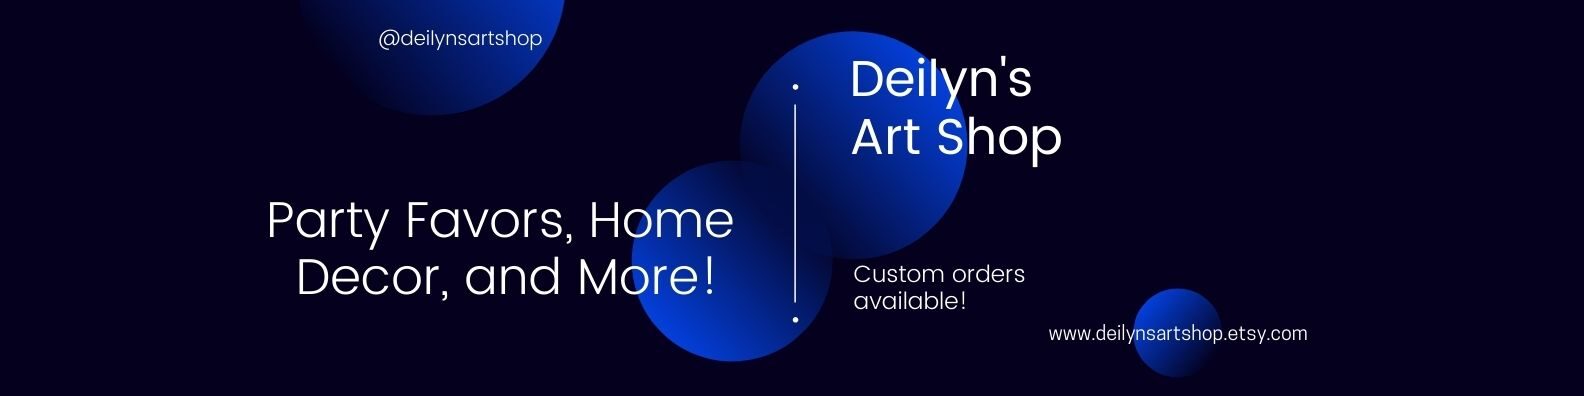 Deilyn's Art Shop